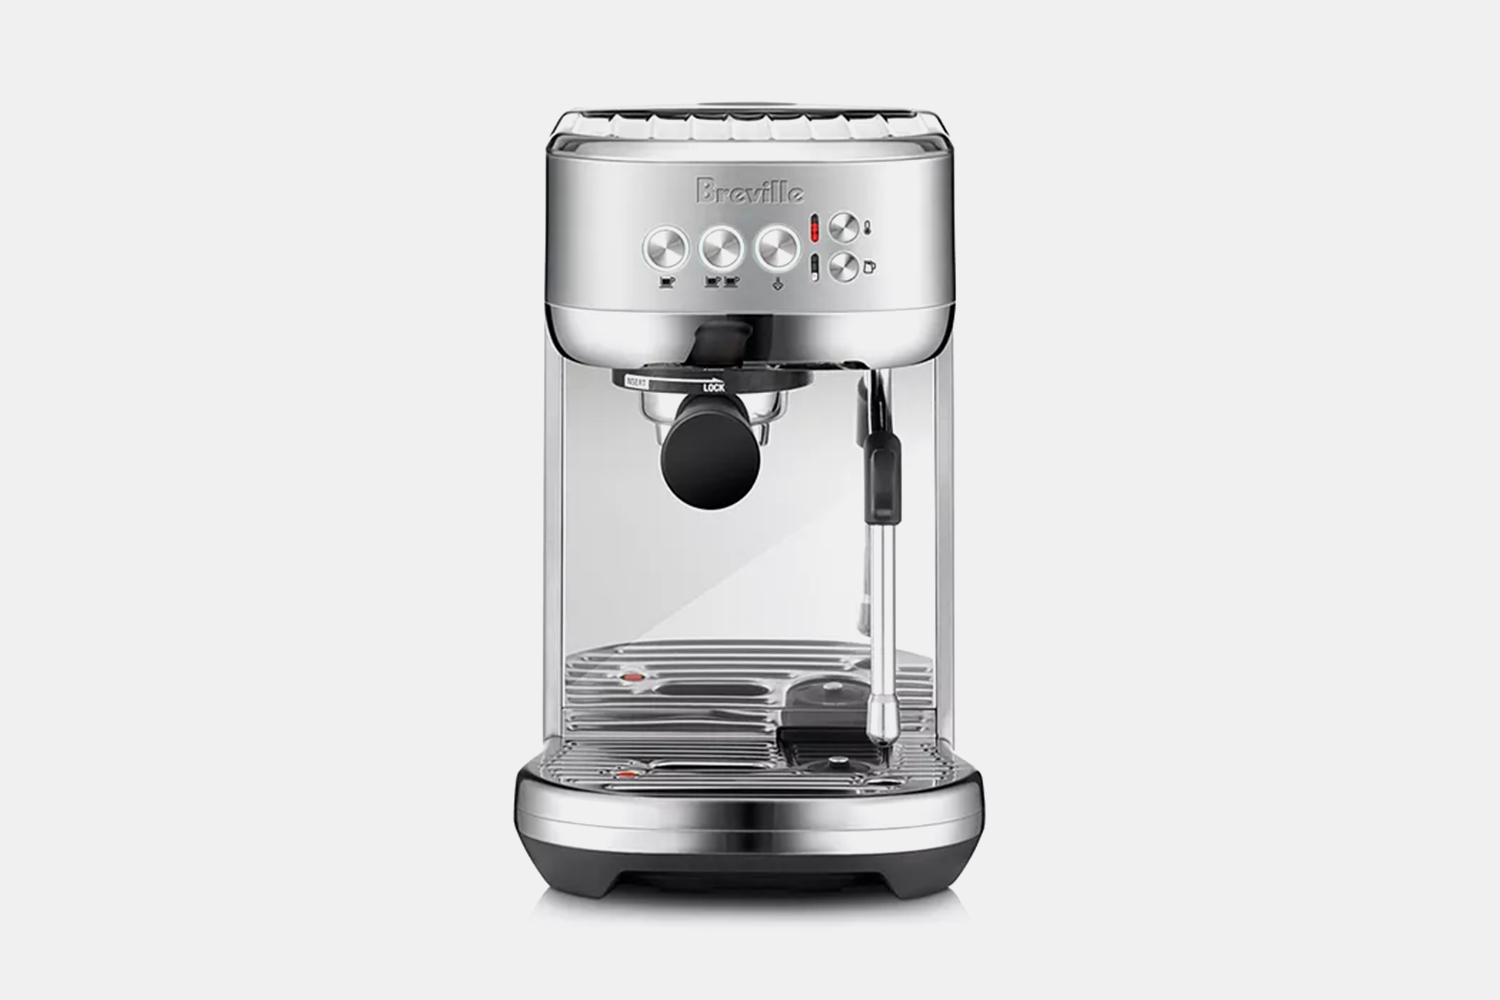 breville espresso machine